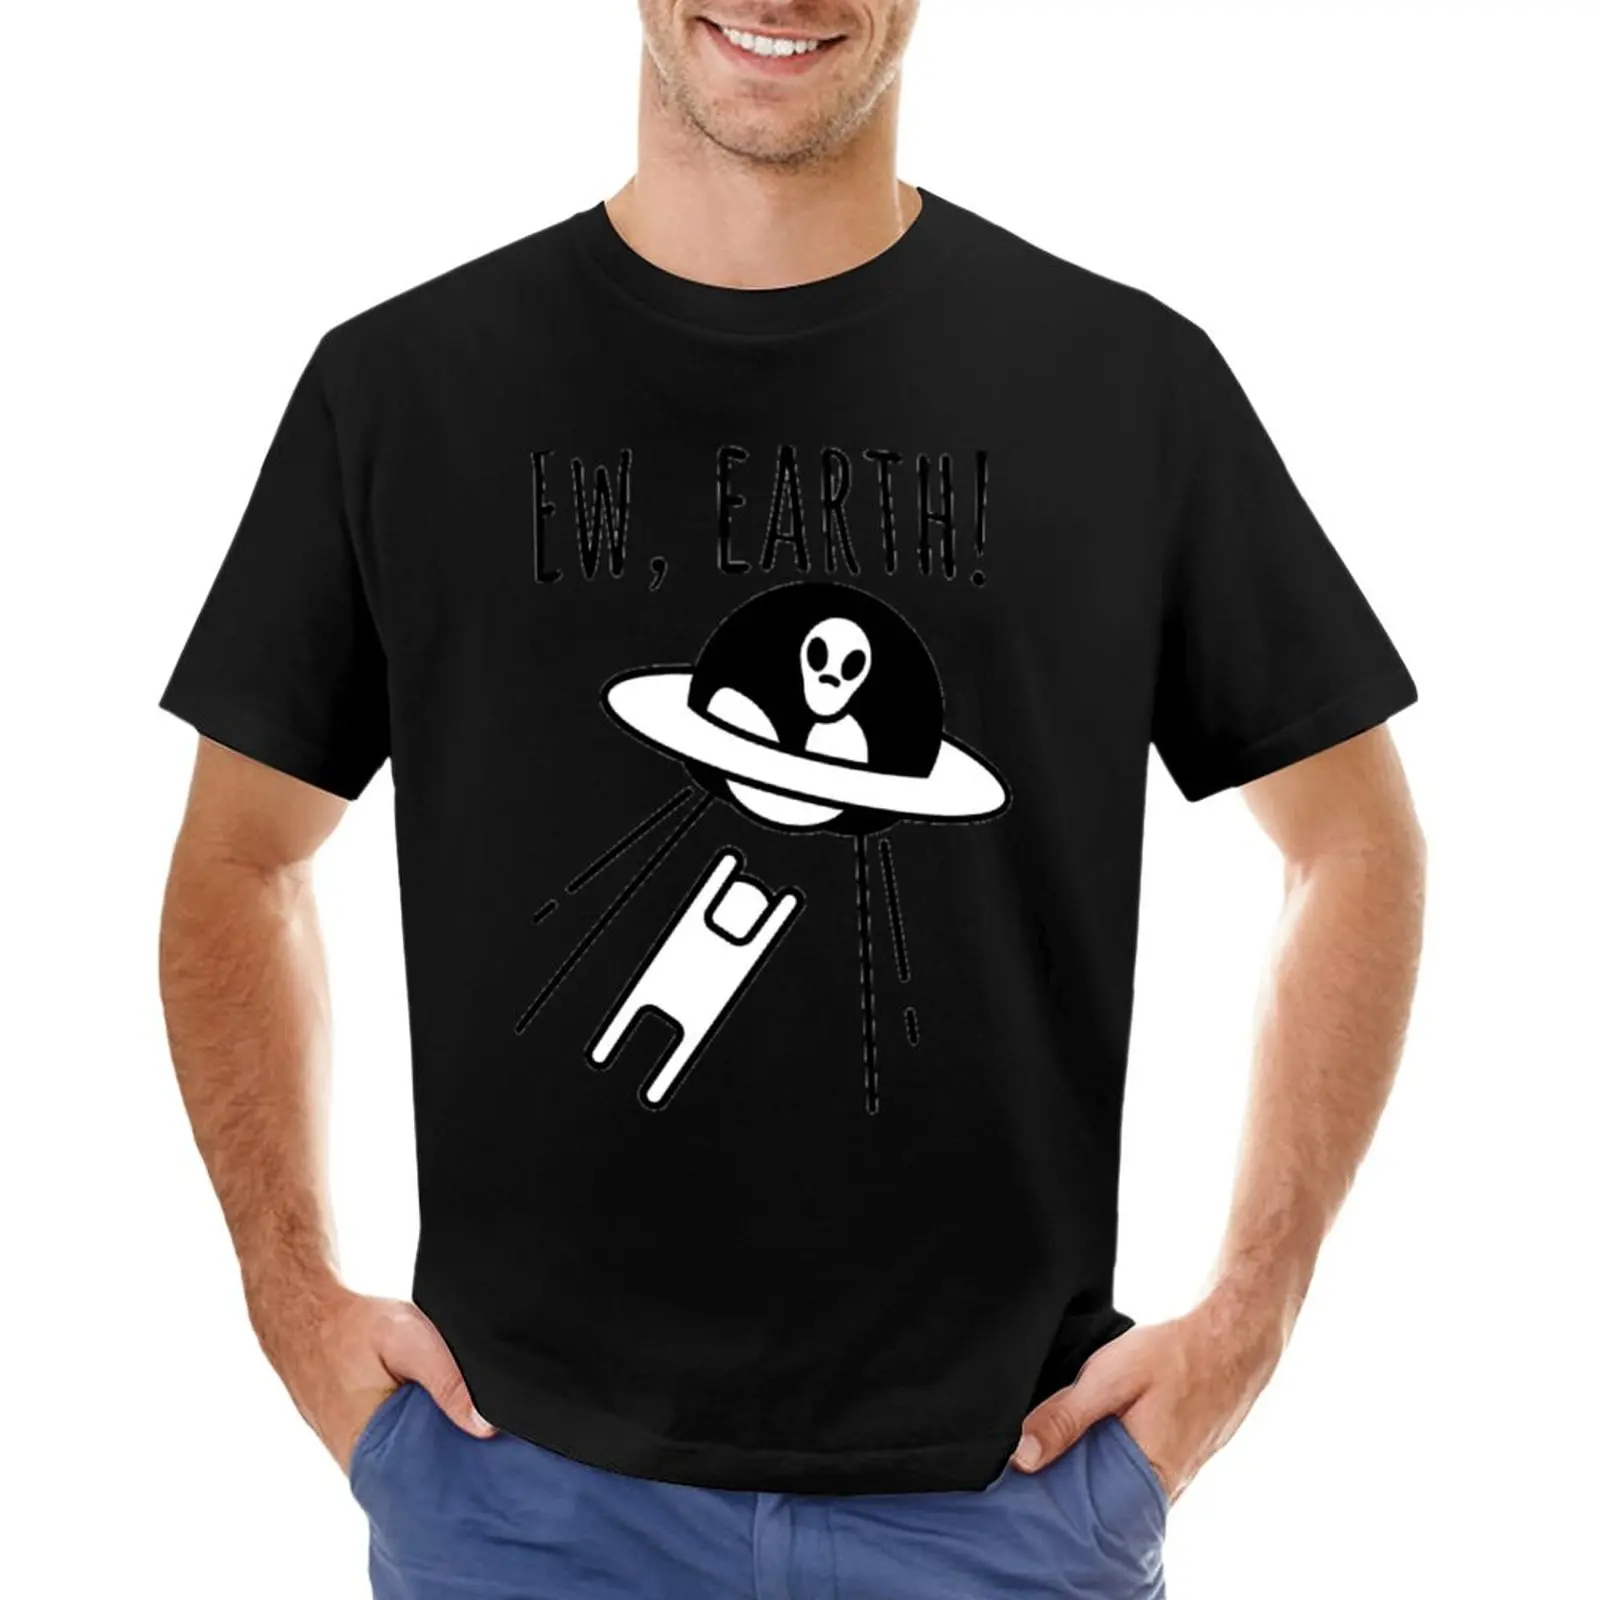 Всемирный день НЛО, забавная Футболка с инопланетянином, черные футболки, футболка с аниме, короткие облегающие футболки для мужчин